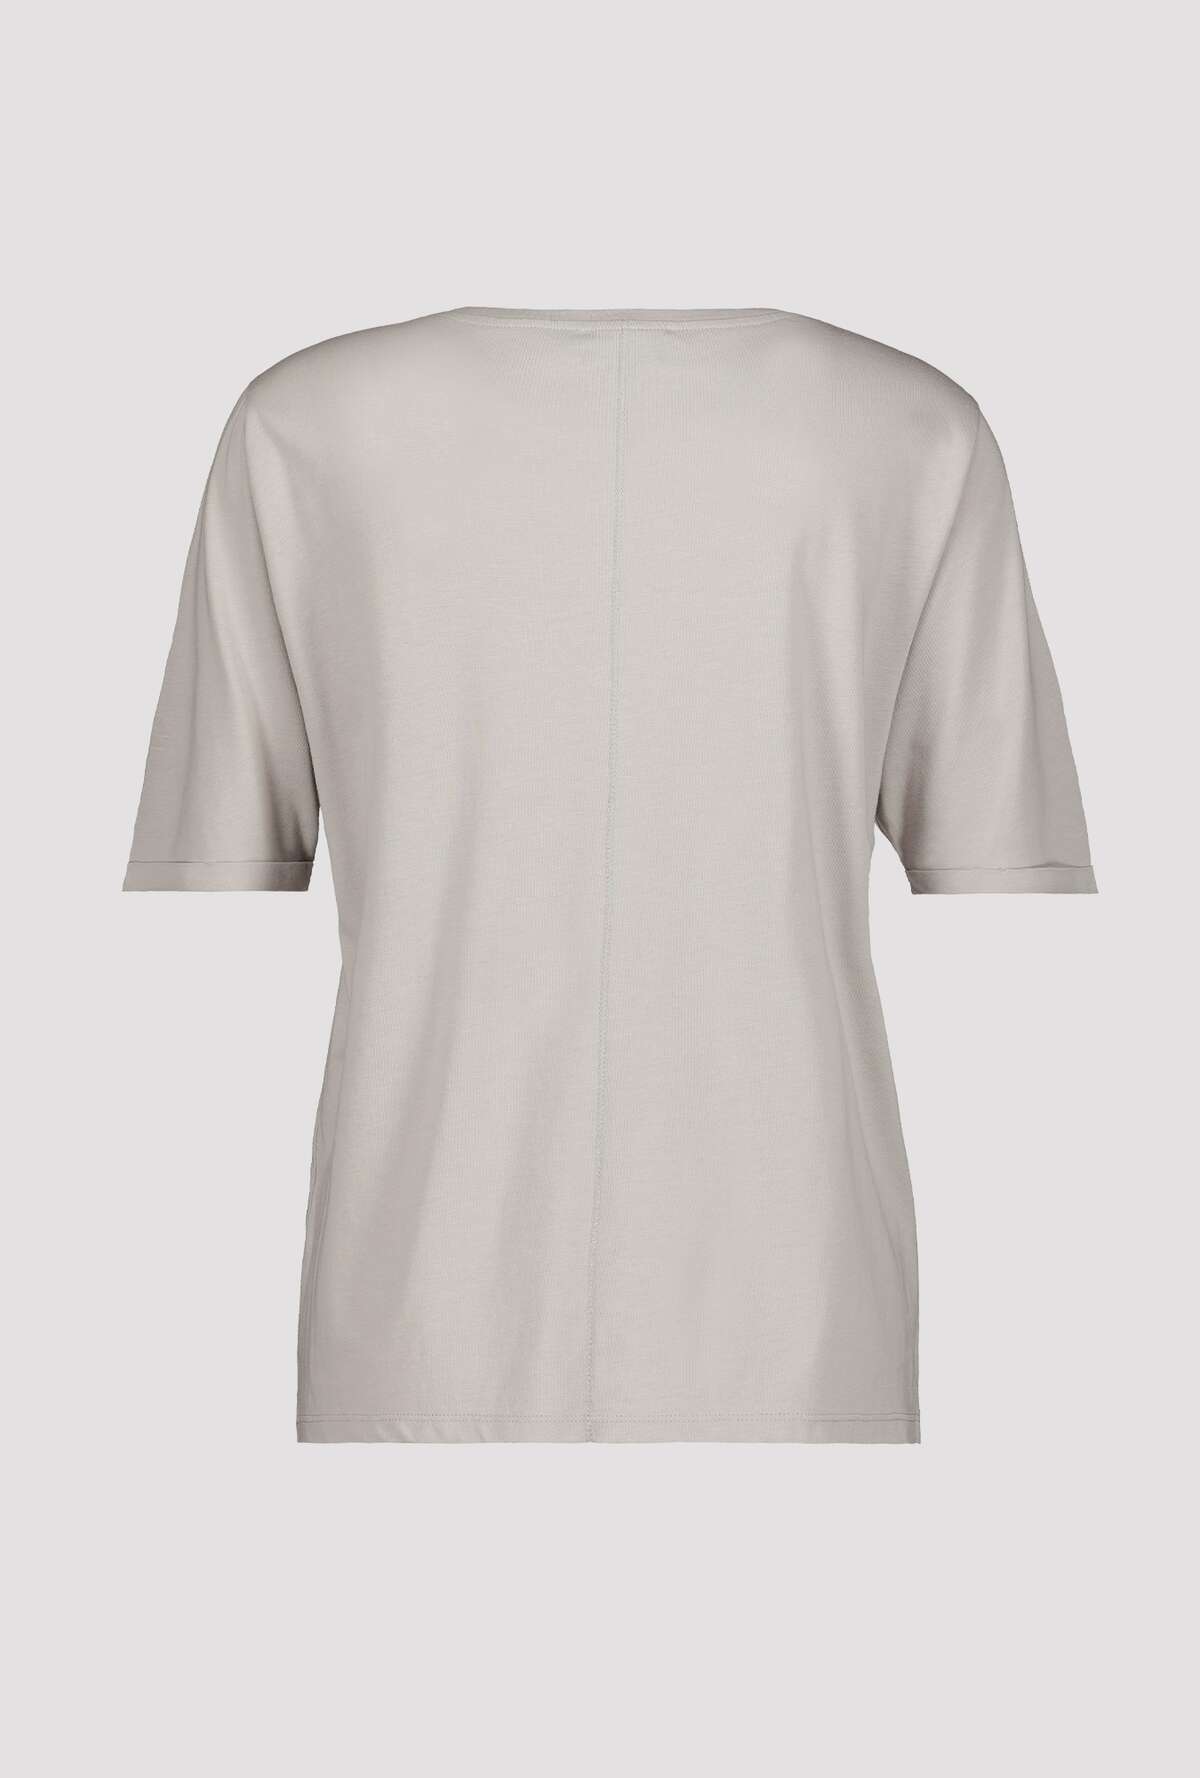 Monari T shirt med pailetter 1